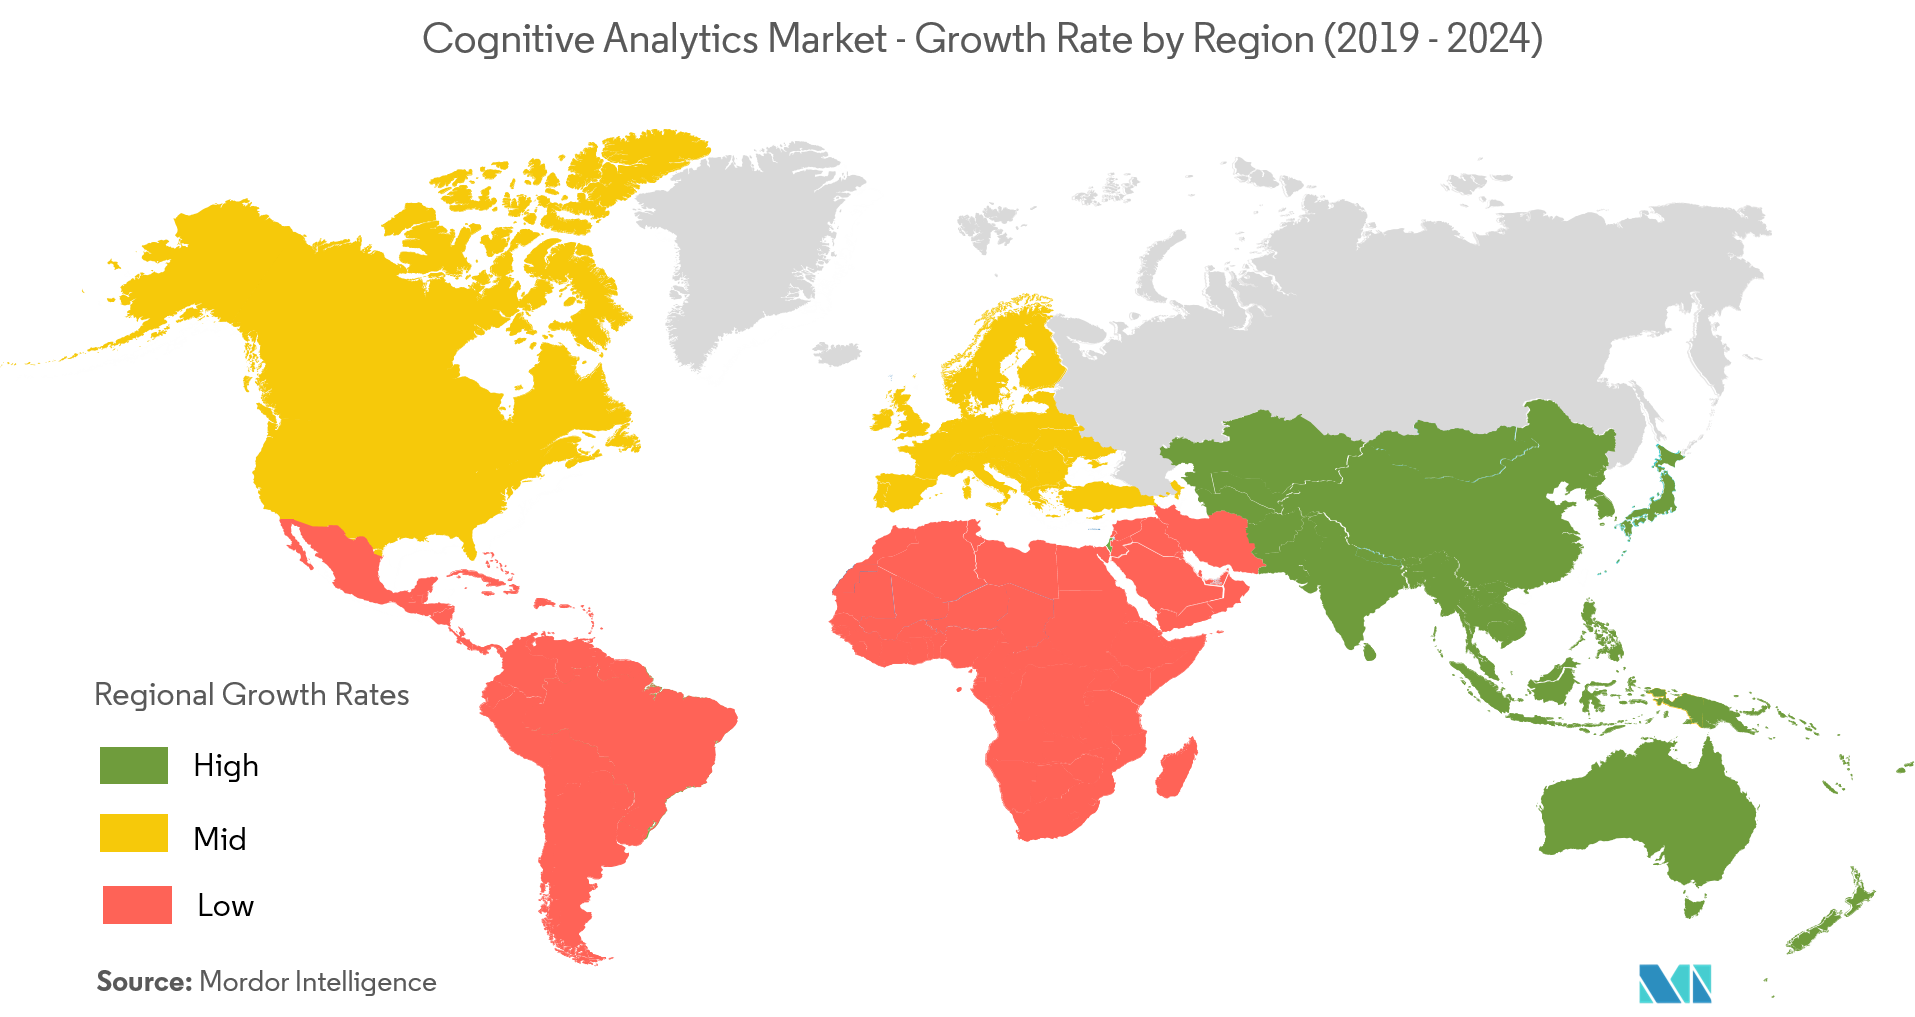 سوق التحليلات المعرفية - معدل النمو حسب المنطقة (2019 - 2024)